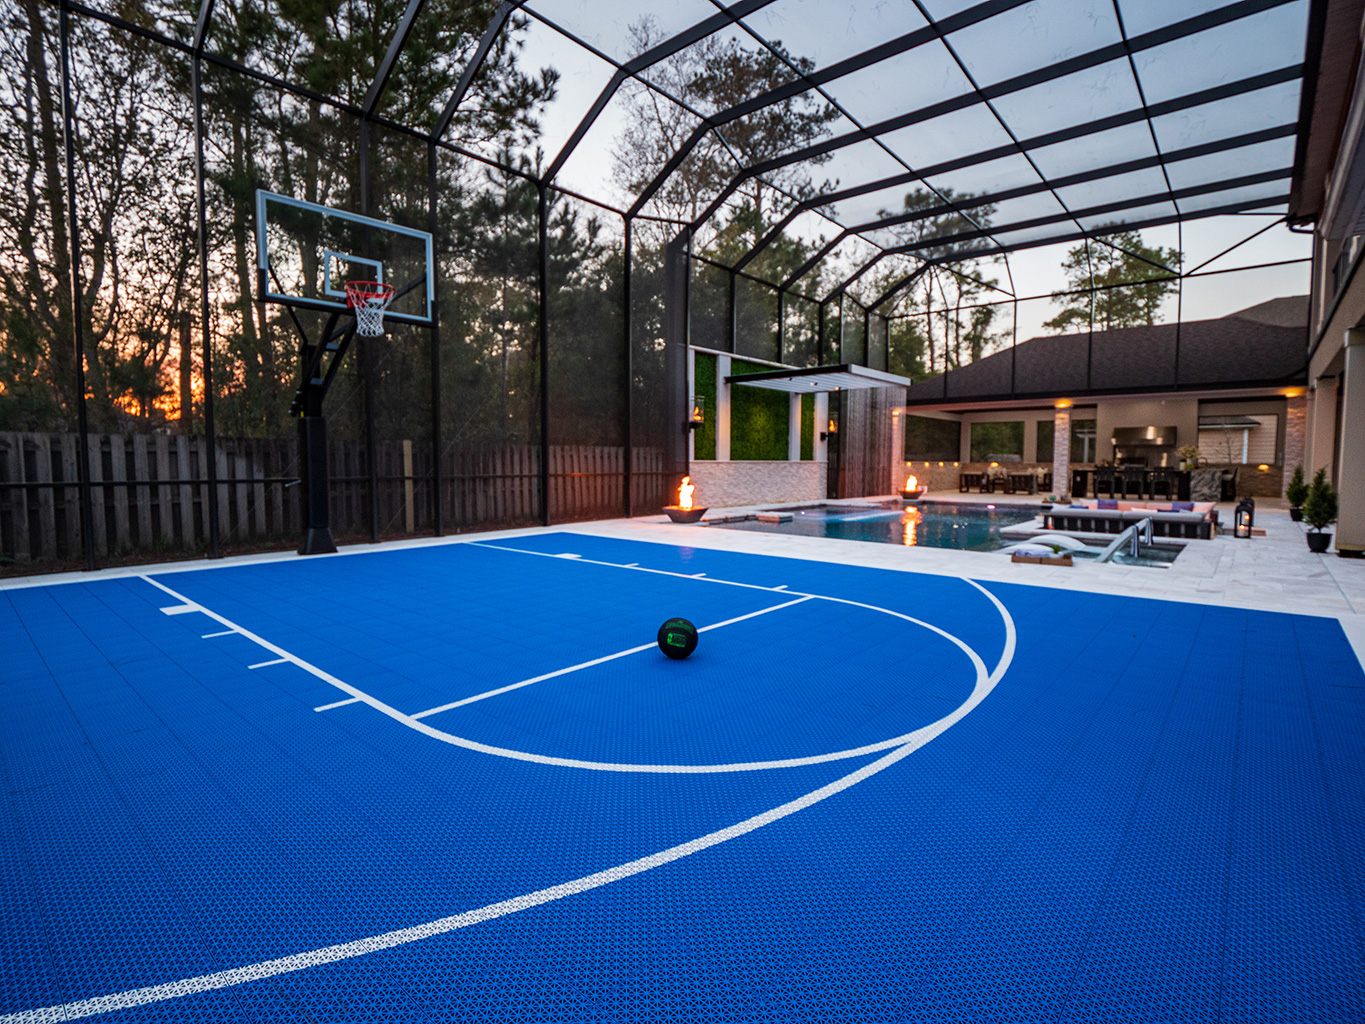 Pratt Guys Featured Project: “Baller’s Backyard”